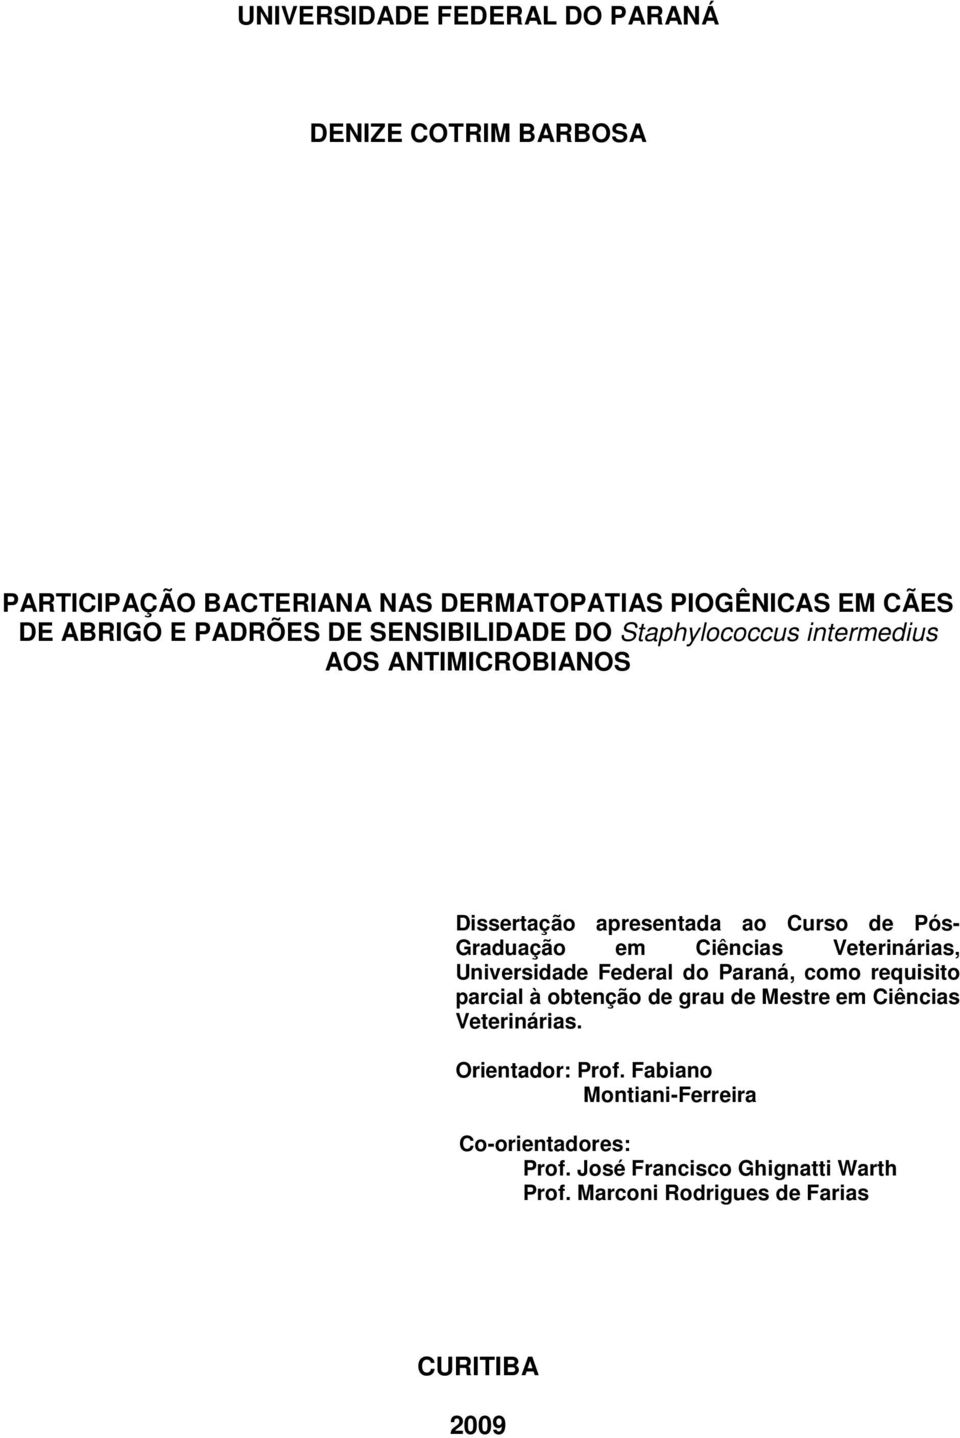 Veterinárias, Universidade Federal do Paraná, como requisito parcial à obtenção de grau de Mestre em Ciências Veterinárias.